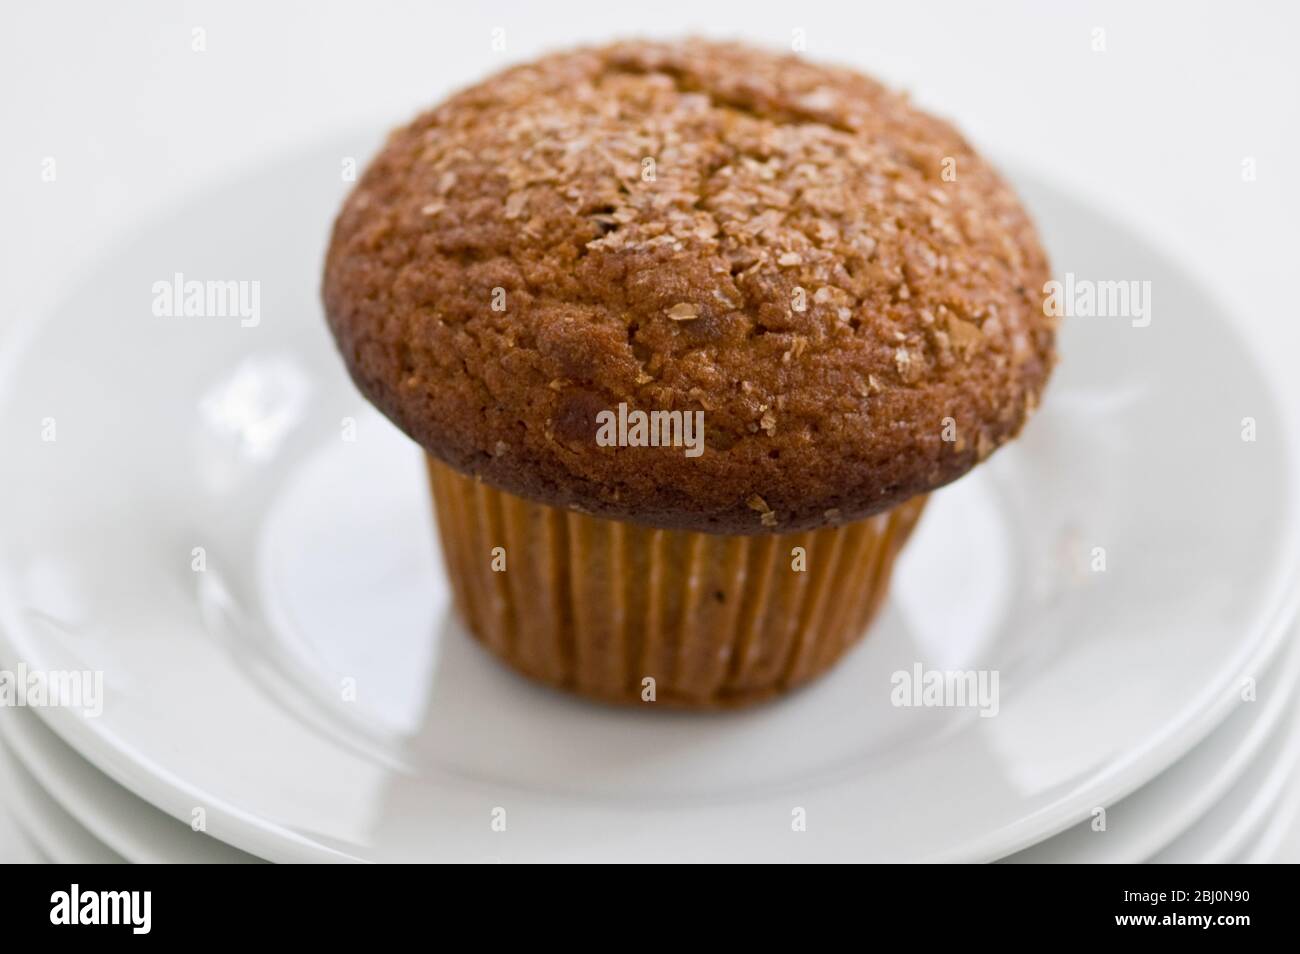 Zimtschnecken-Kleie Muffin auf weißen Tellern mit einer Tasse schwarzen Kaffee - Stockfoto